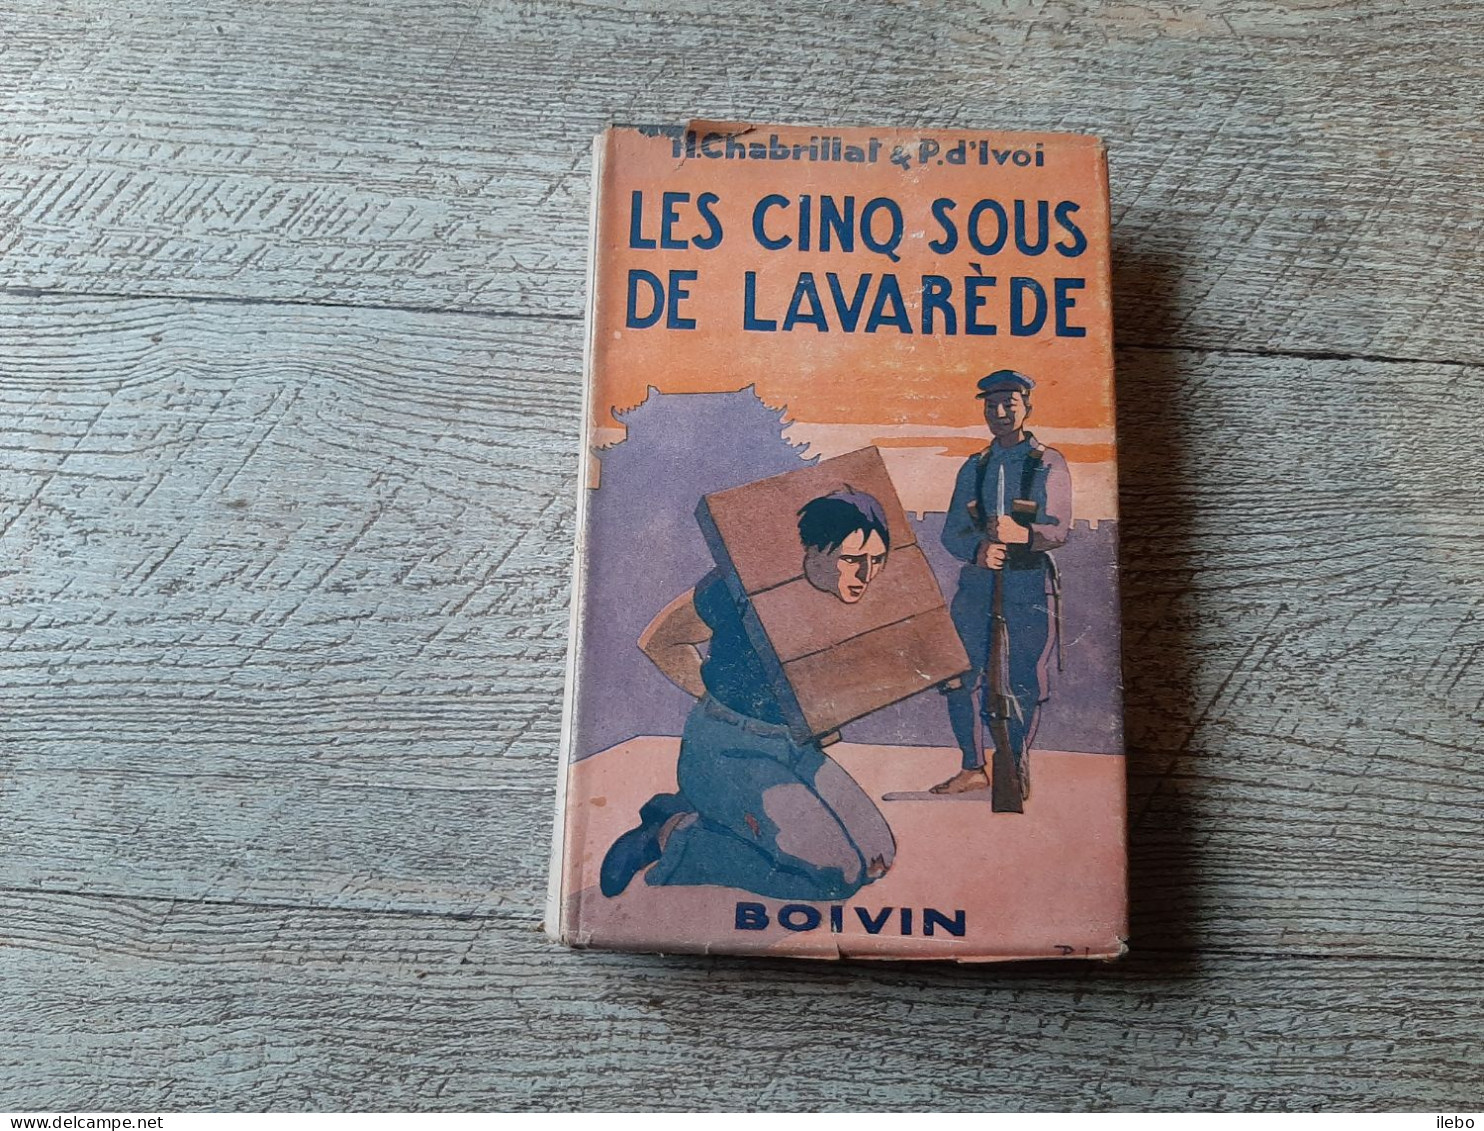 Les Cinq Sous De Lavarède Paul D'ivoi Et Chabrillat Boivin 1948 Dessins Dufour - Adventure